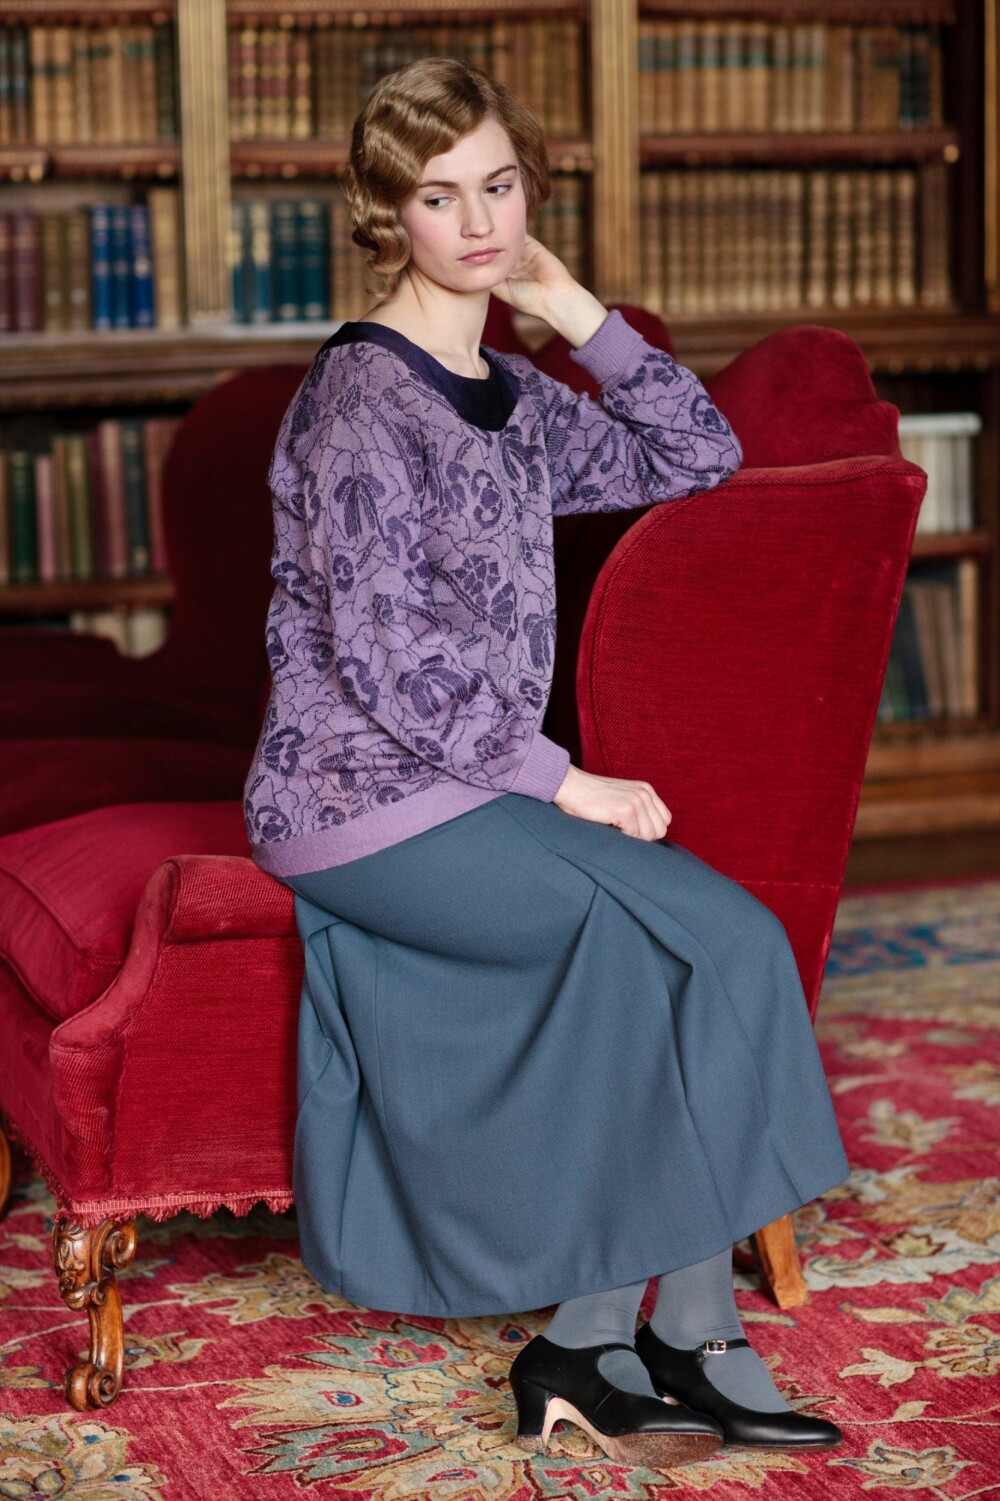 Dyp rød sofa og persisk teppe på gulvet i biblioteket på Downton Abbey. Lady Rose (Lily James) later til å kjede seg, bøkene til tross.